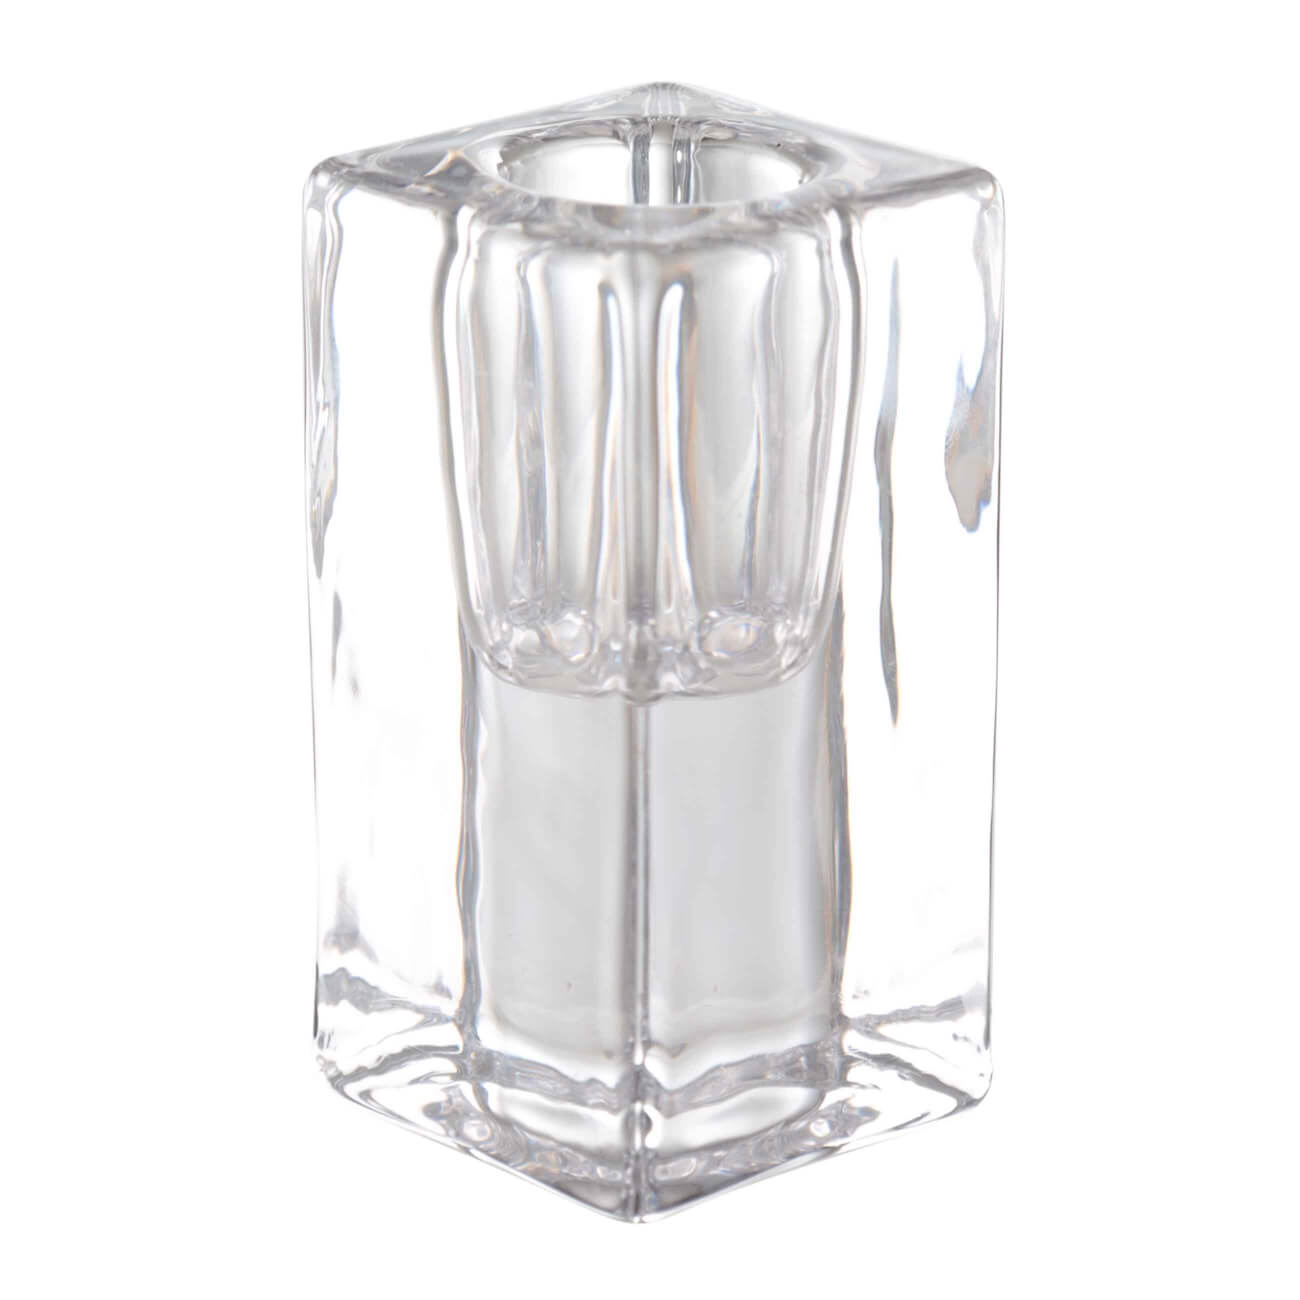 подсвечник 8 см для тонкой свечи стекло cube Подсвечник, 8 см, для тонкой свечи, стекло, Cube